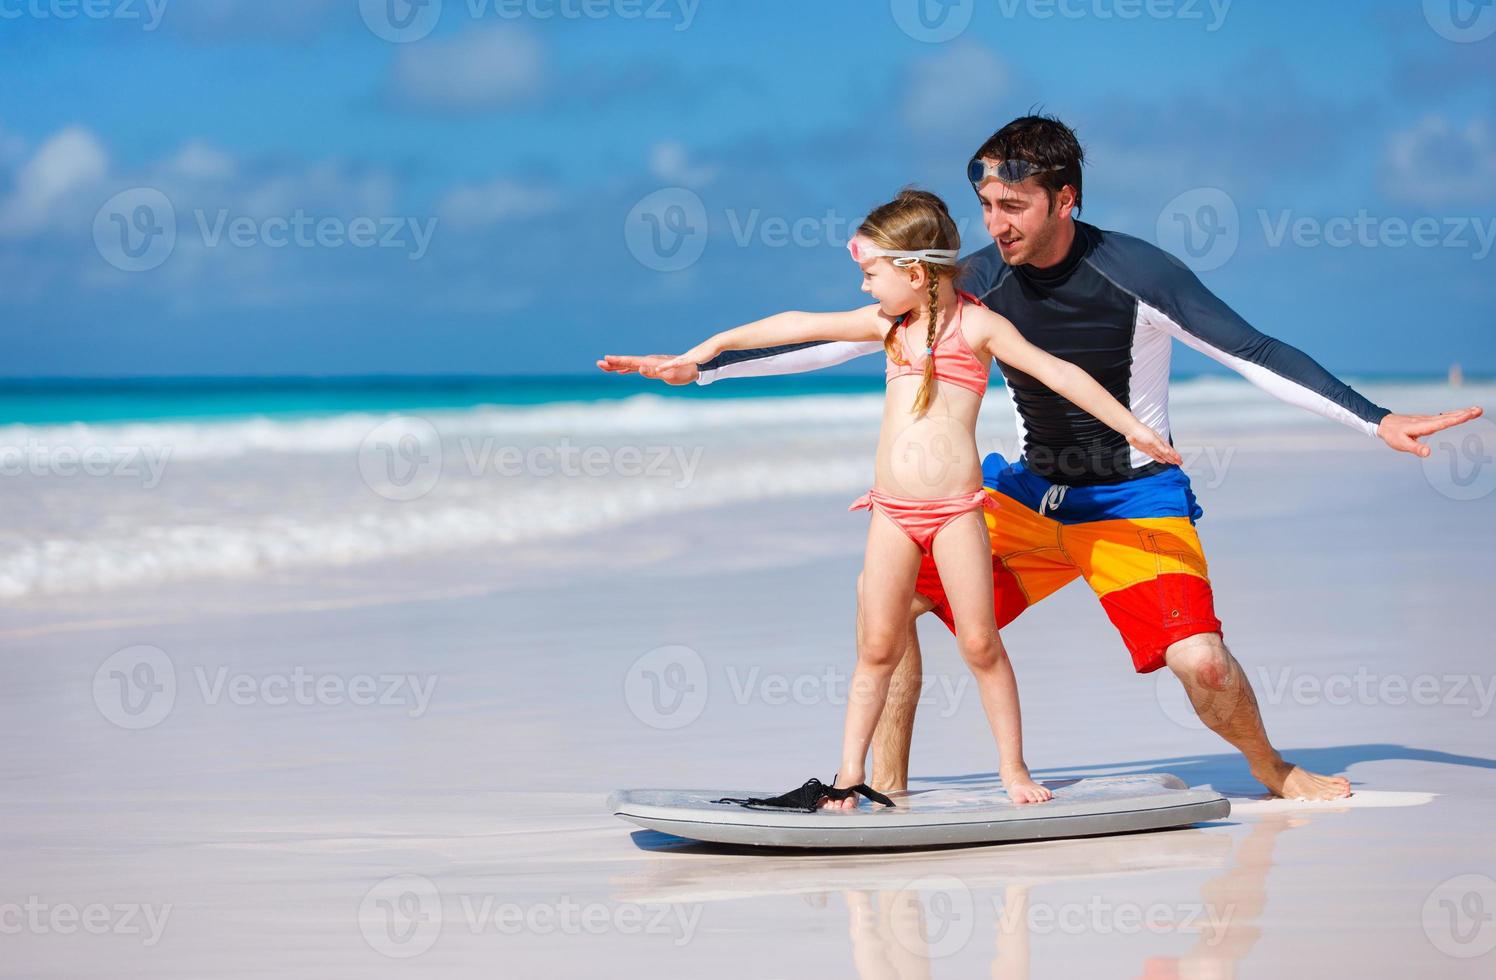 padre e hija practicando surf foto